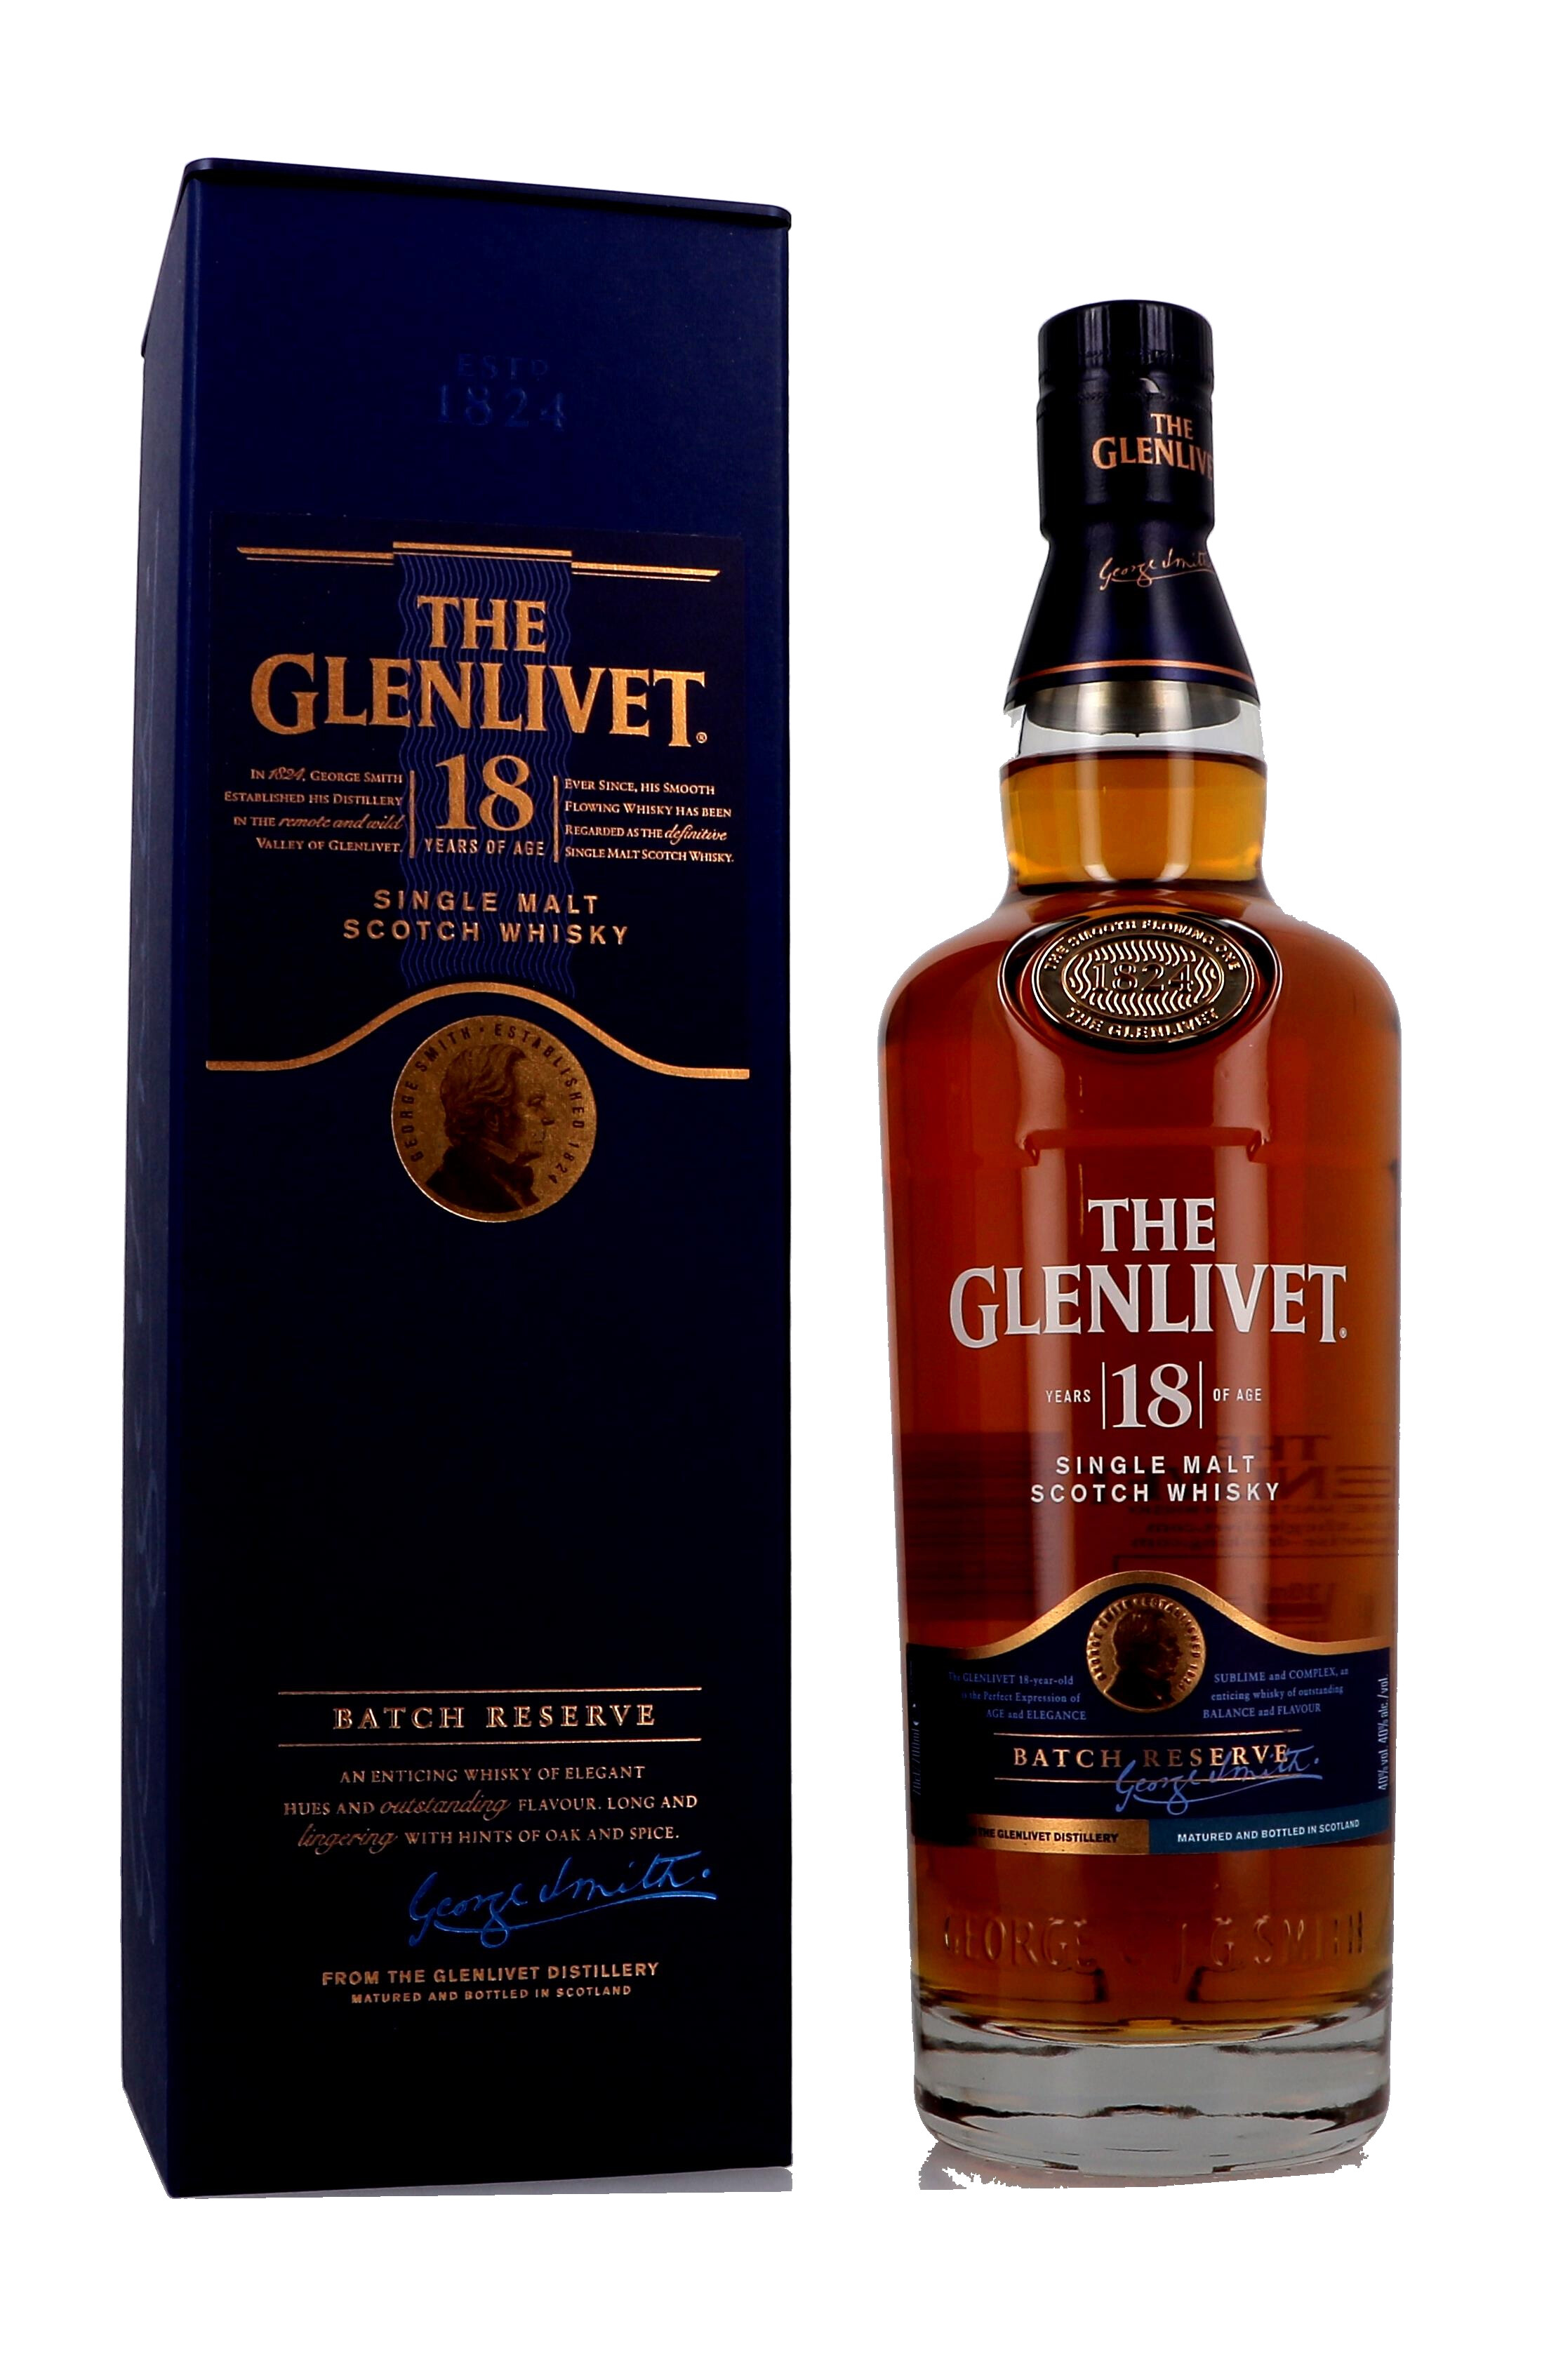 The Glenlivet 18 Years Batch Whisky 40% Single Malt 70cl - Nevejan Speyside Scotch Reserve